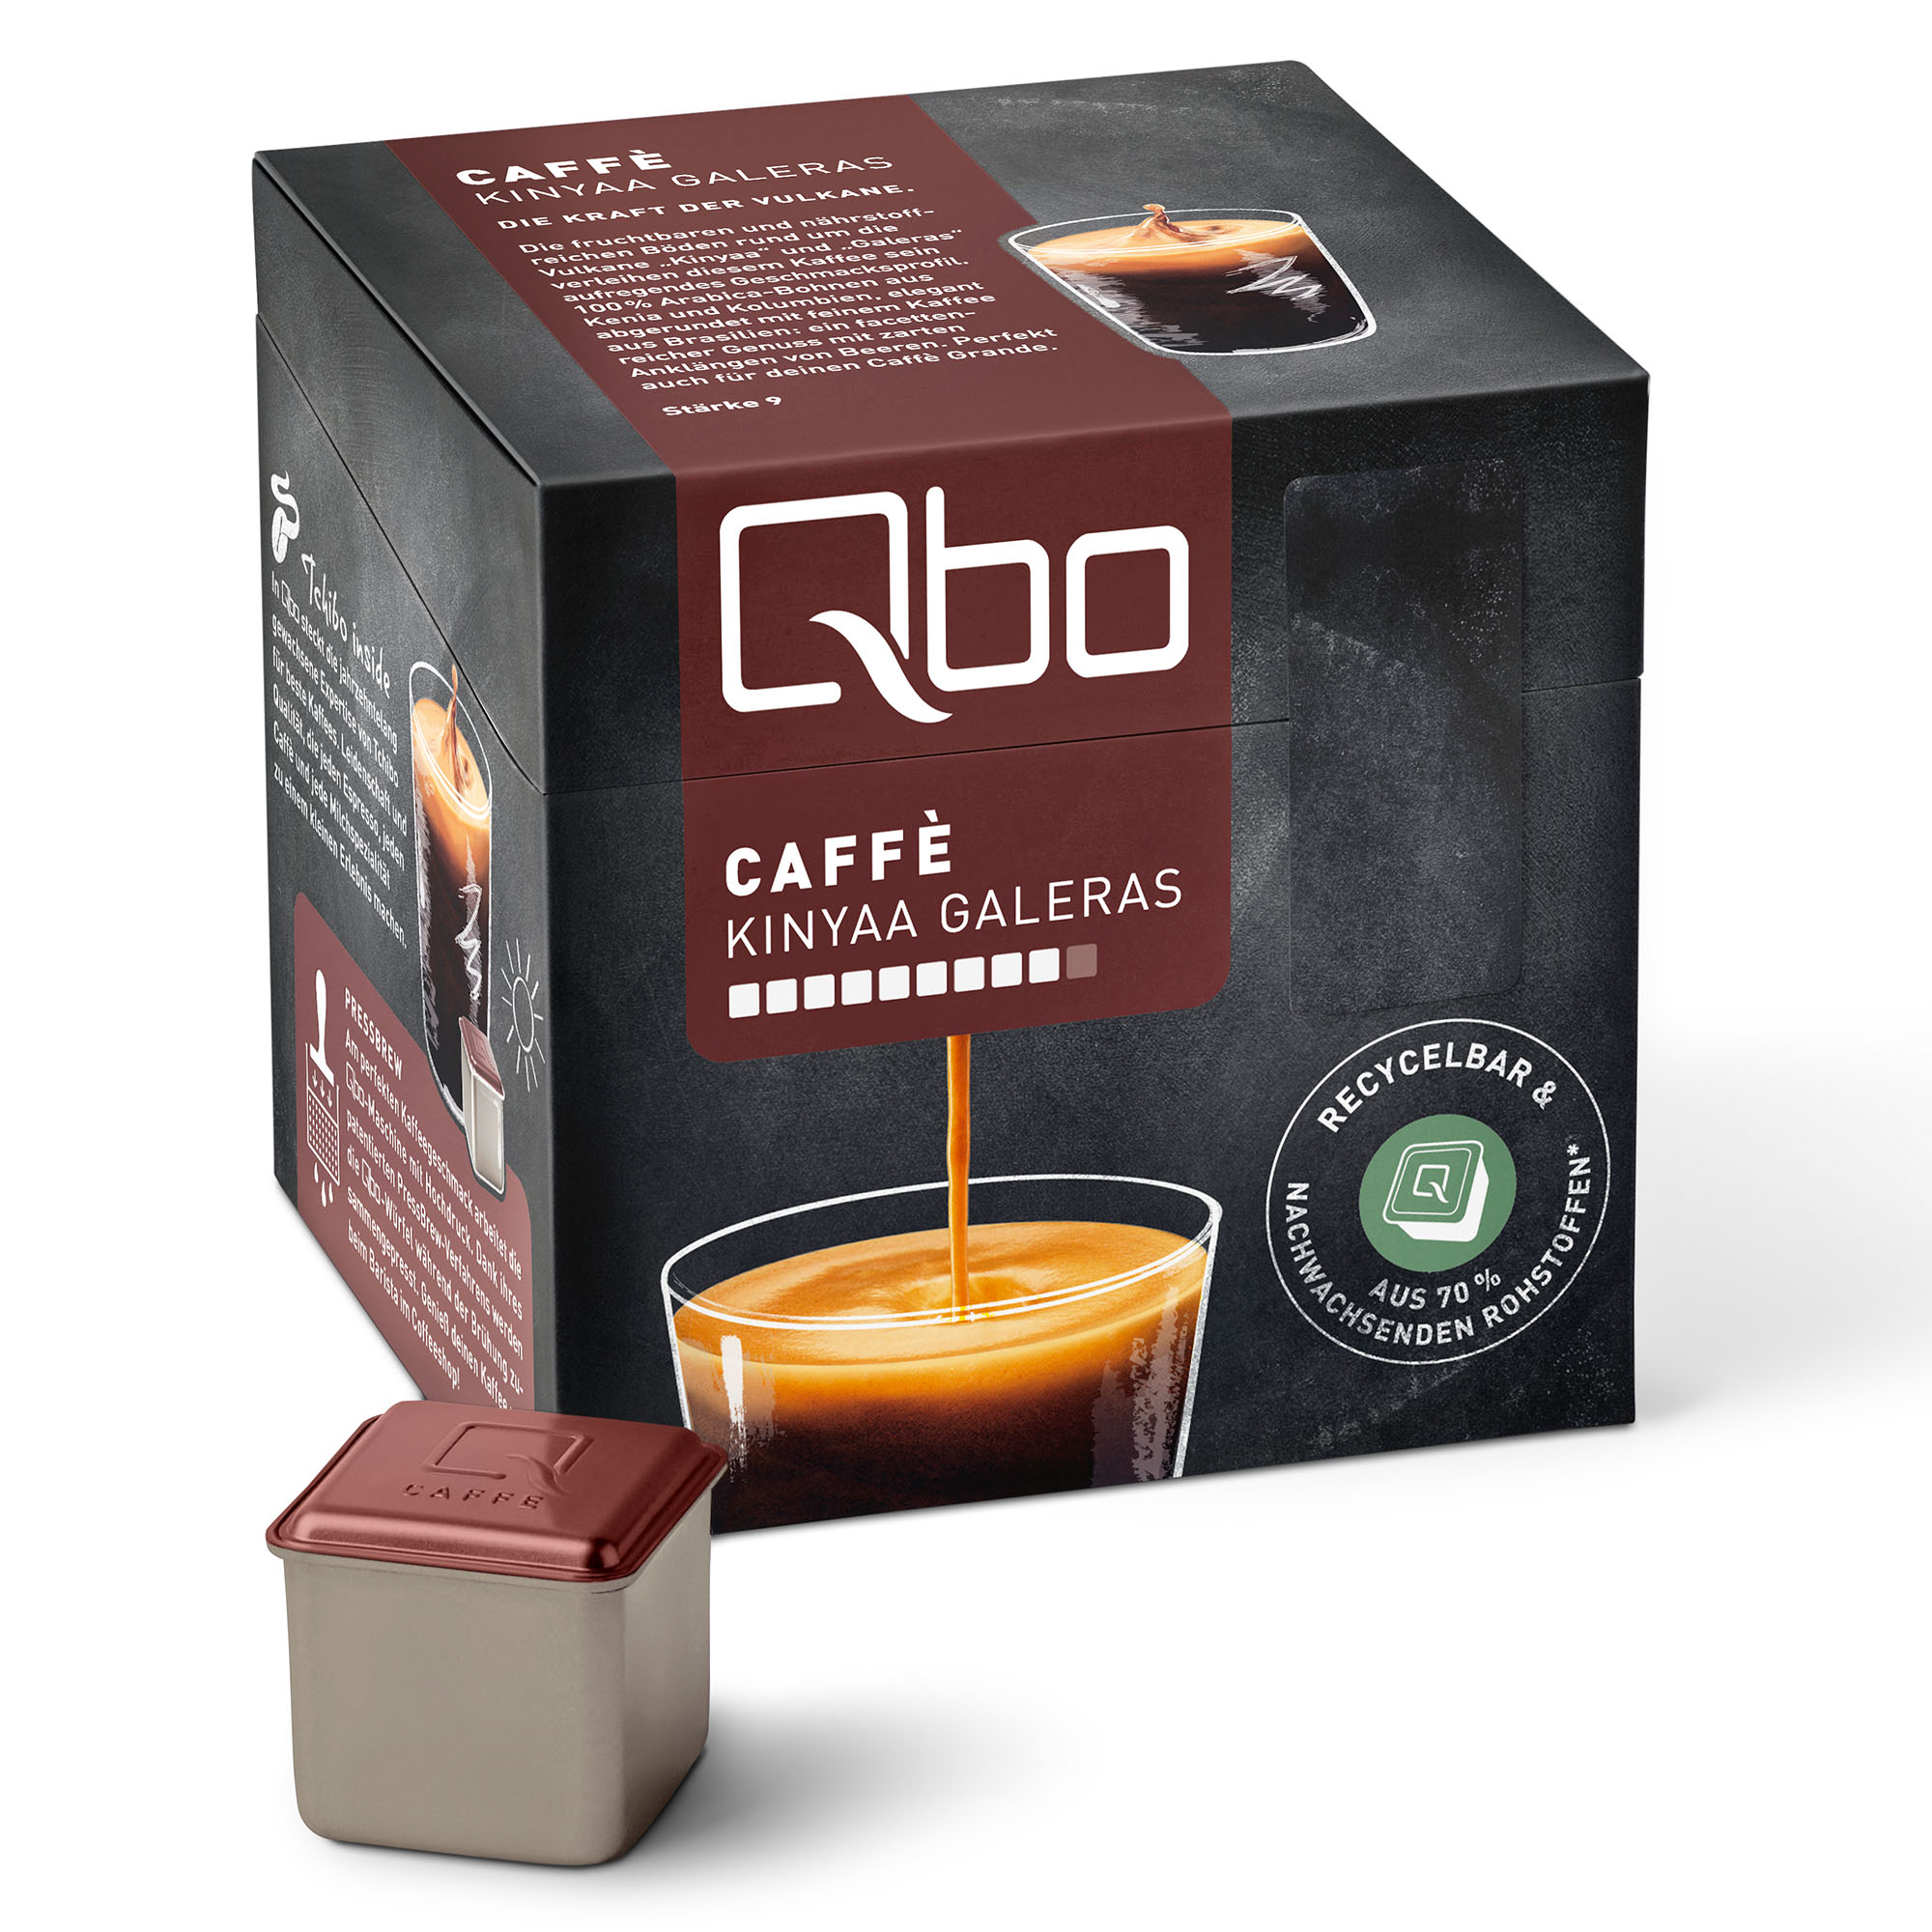 TCHIBO QBO 520926 St. Qbo Caffè 216 (Tchibo Kaffeekapseln Pack XXL Kapselsystem) Galeras Kinyaa